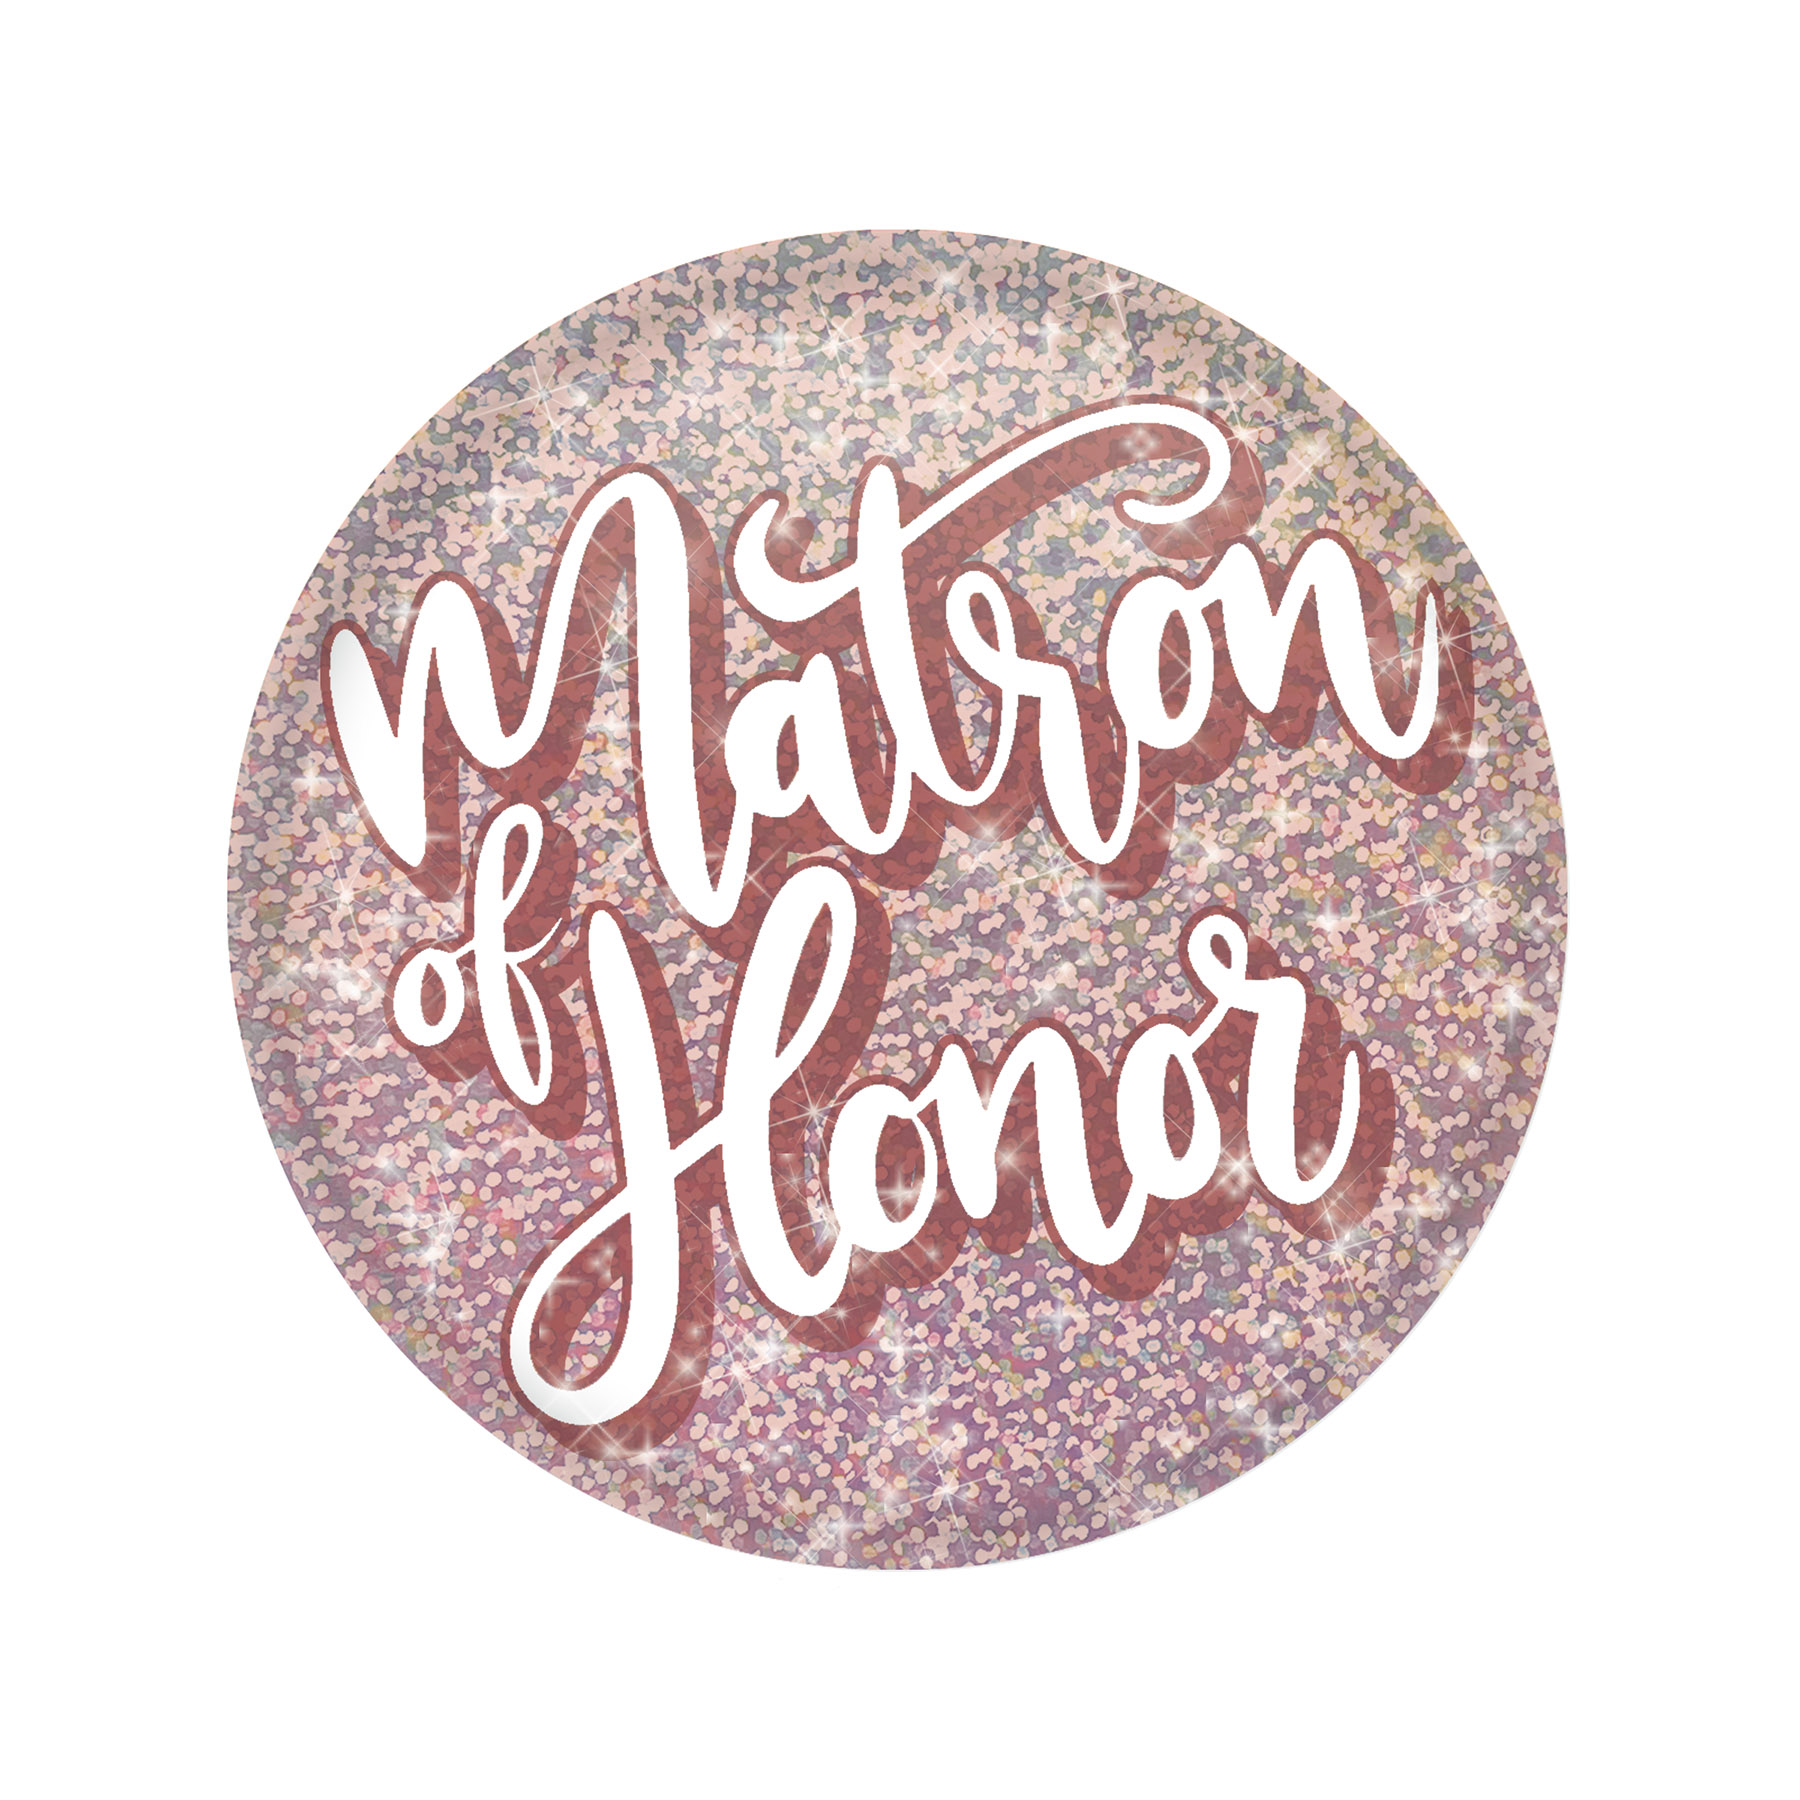 Matron of Honor Button